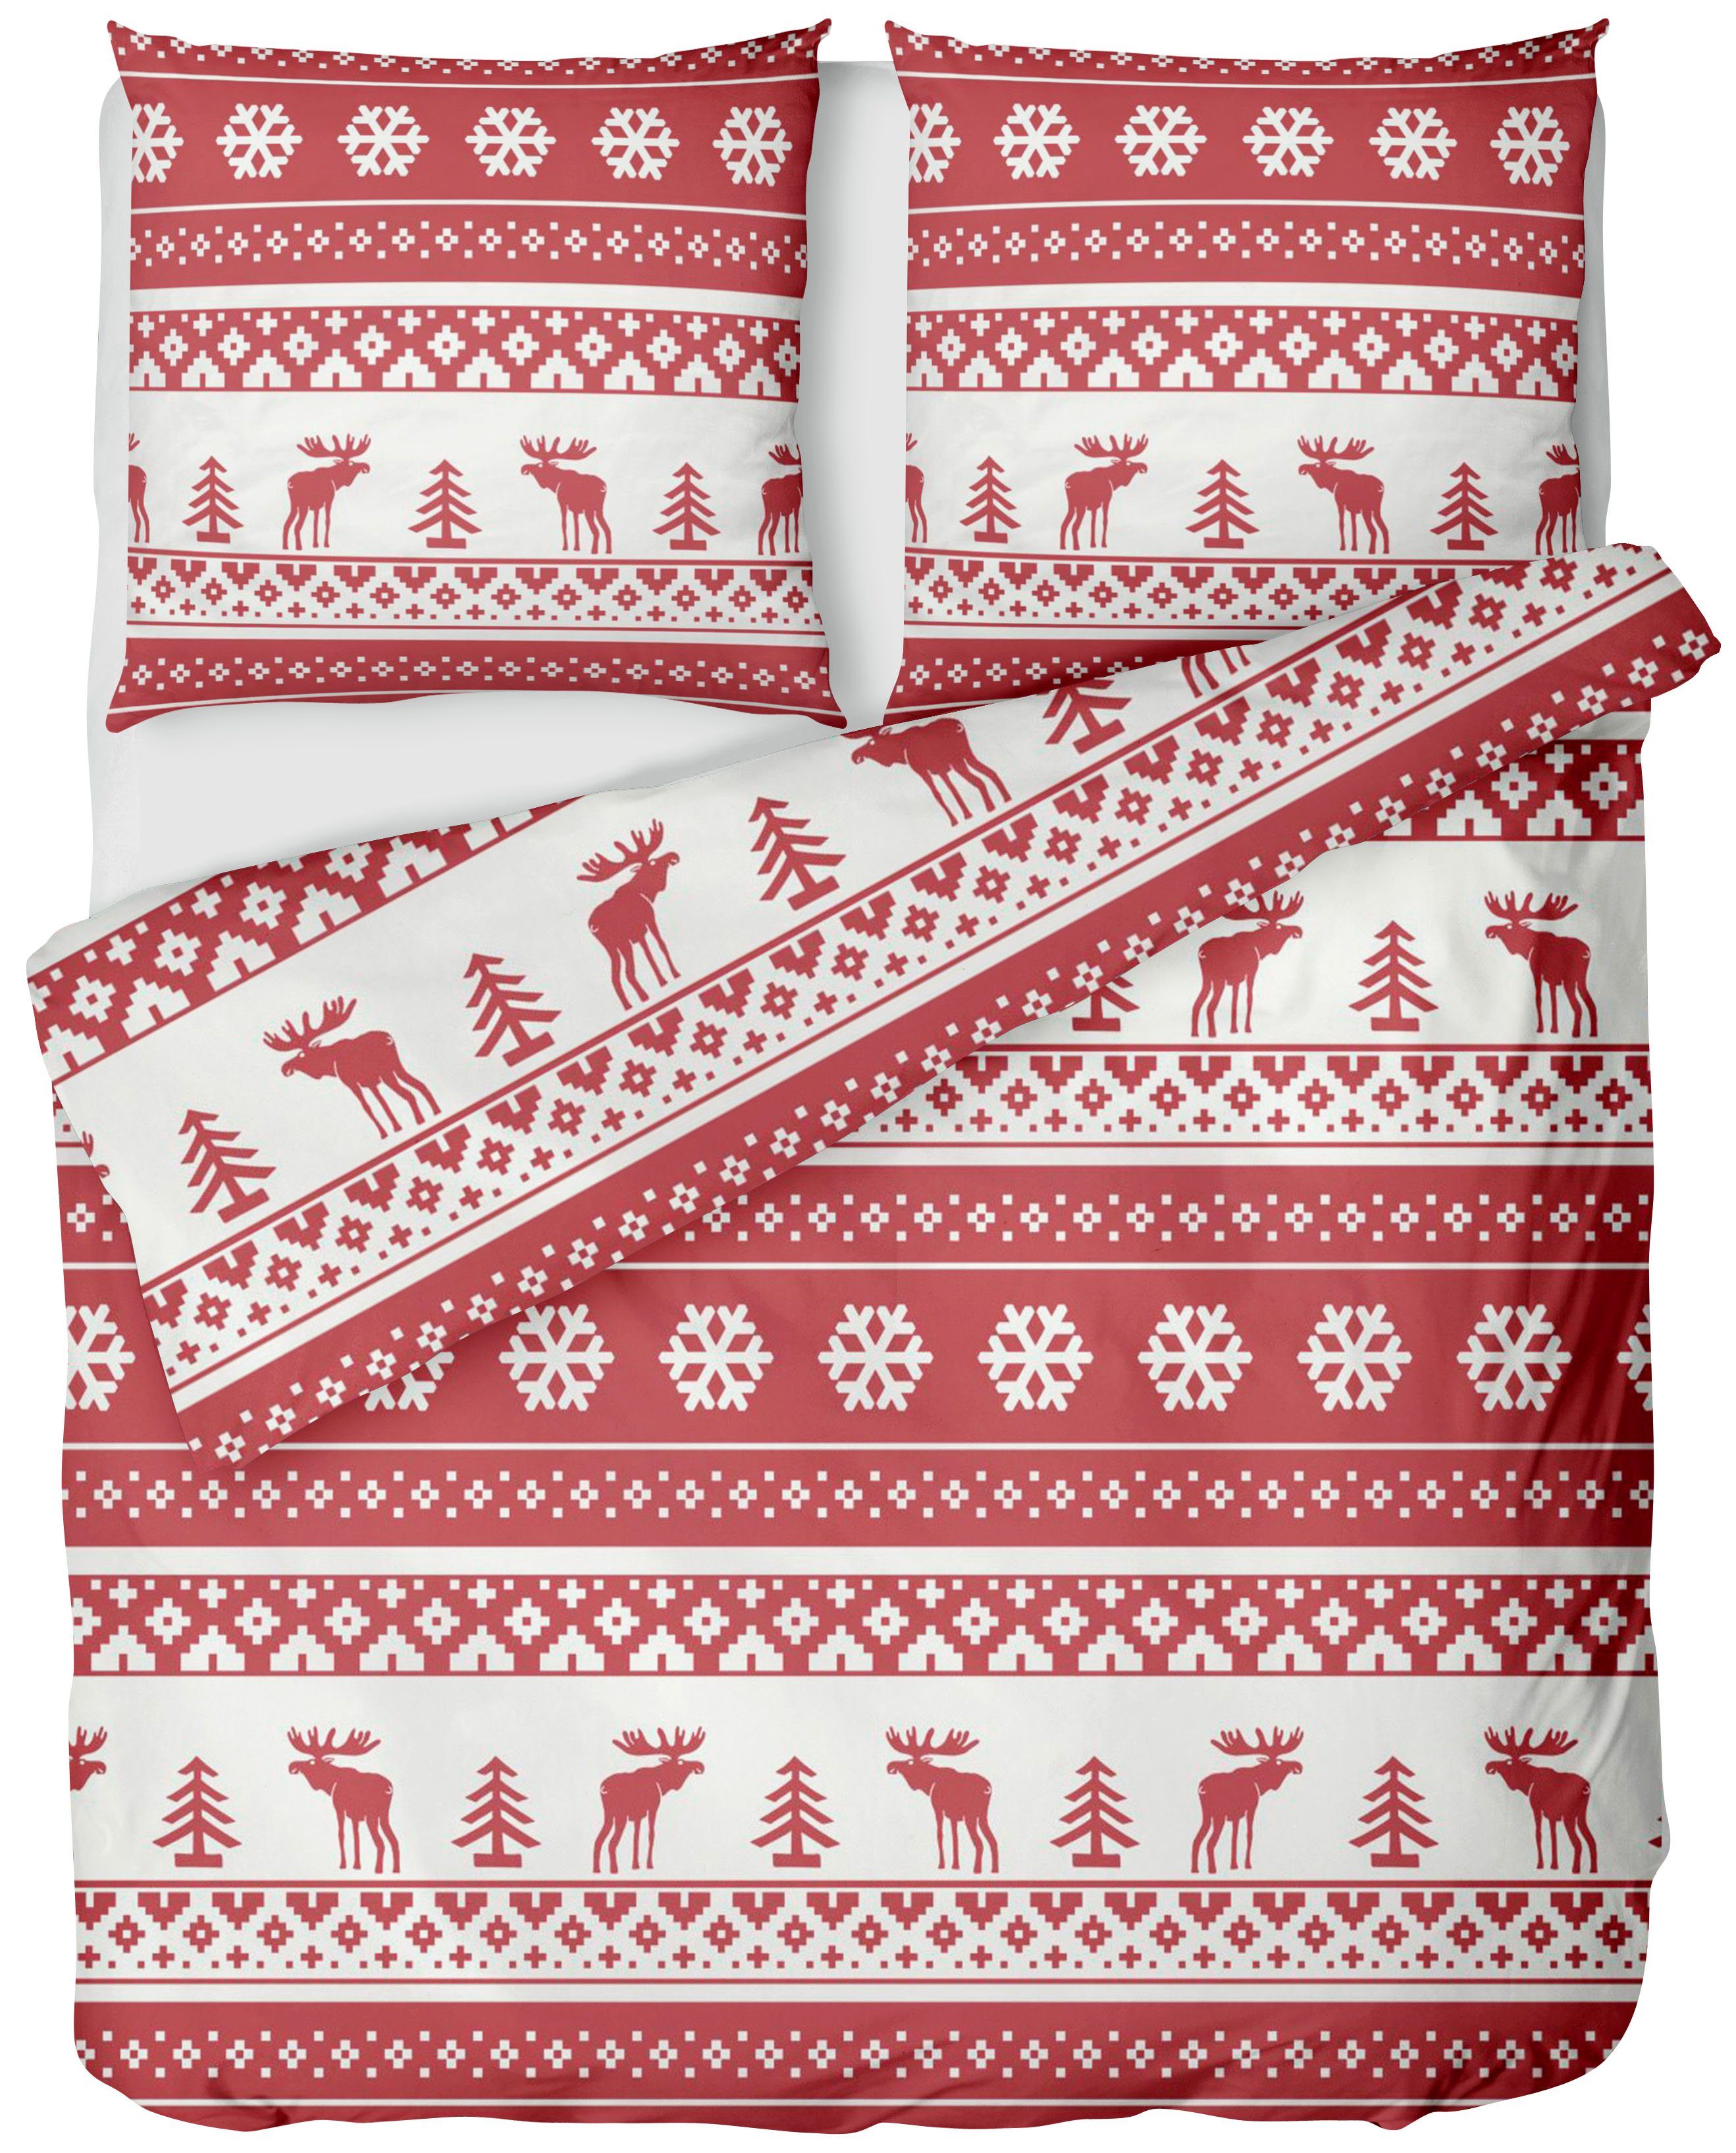 Bettwäsche Biber Weihnachtsbettwäsche 135x200 / 155x220 + Kissen, LINKHOFF,  Winter Bettwäsche Weihnachten Warm Biberbettwäsche Rot Weiß